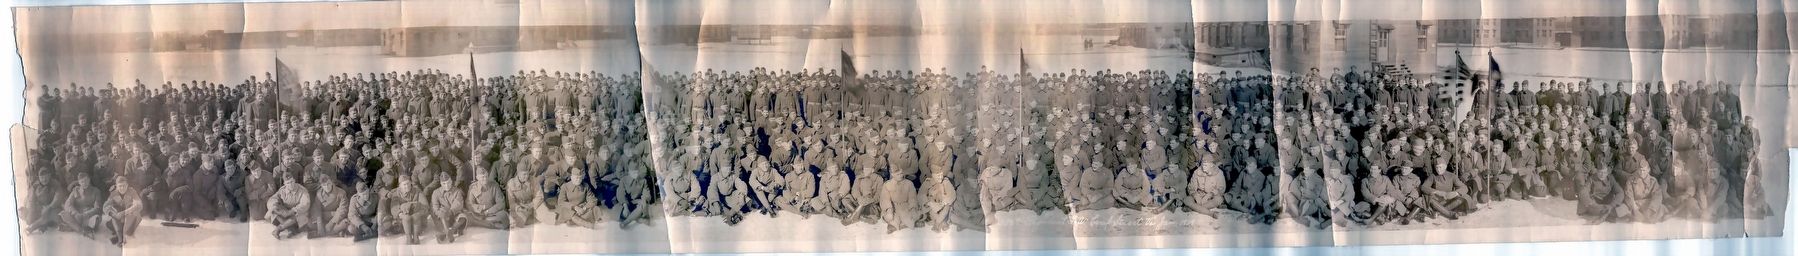 338th Regiment, 1919 Camp Stuart, Va image. Click for full size.